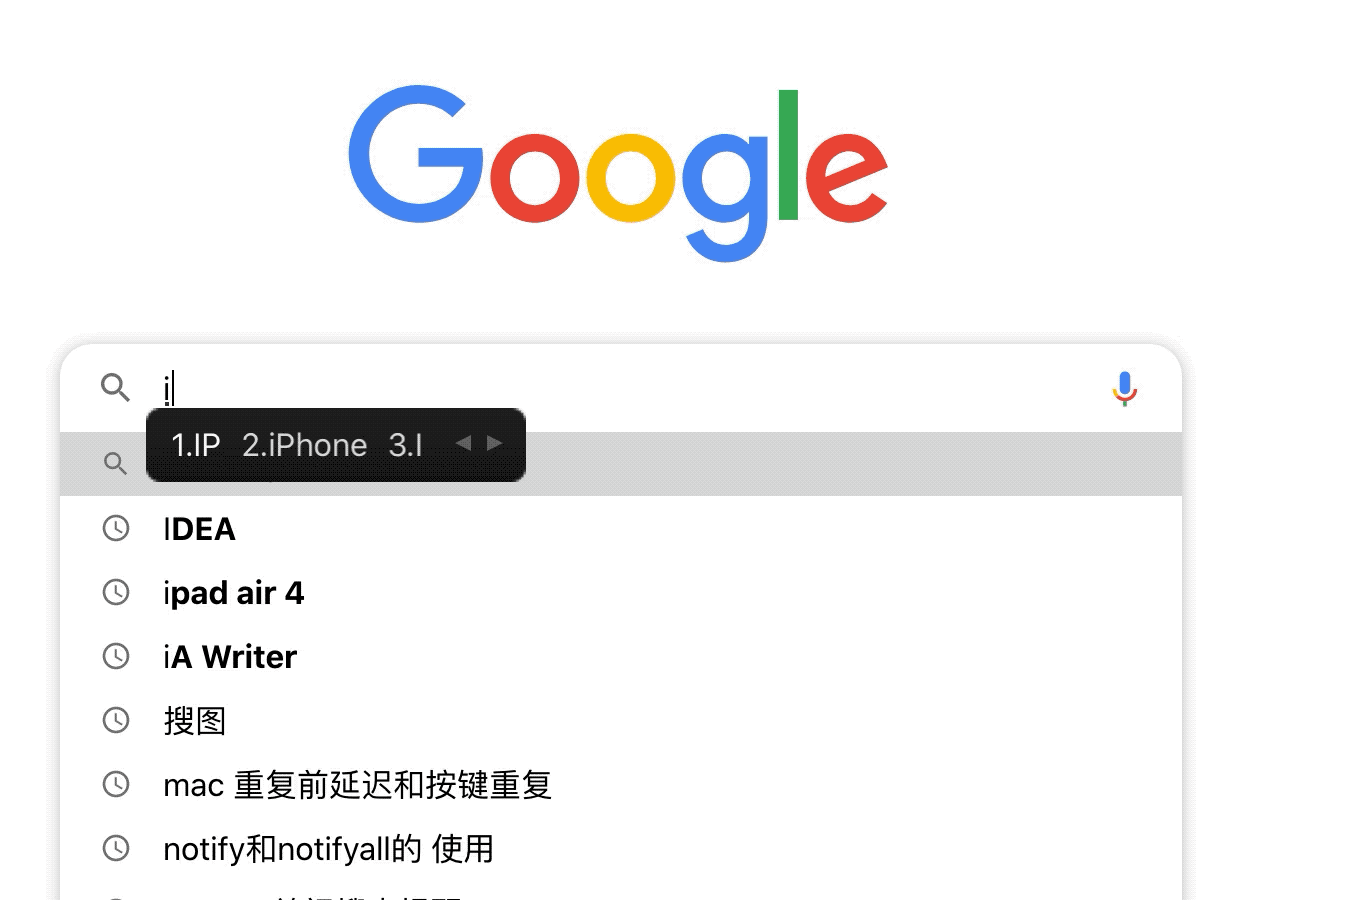 大佬帮忙看看： Mac 搜狗输入法输入 Google 搜索时搜索词出错